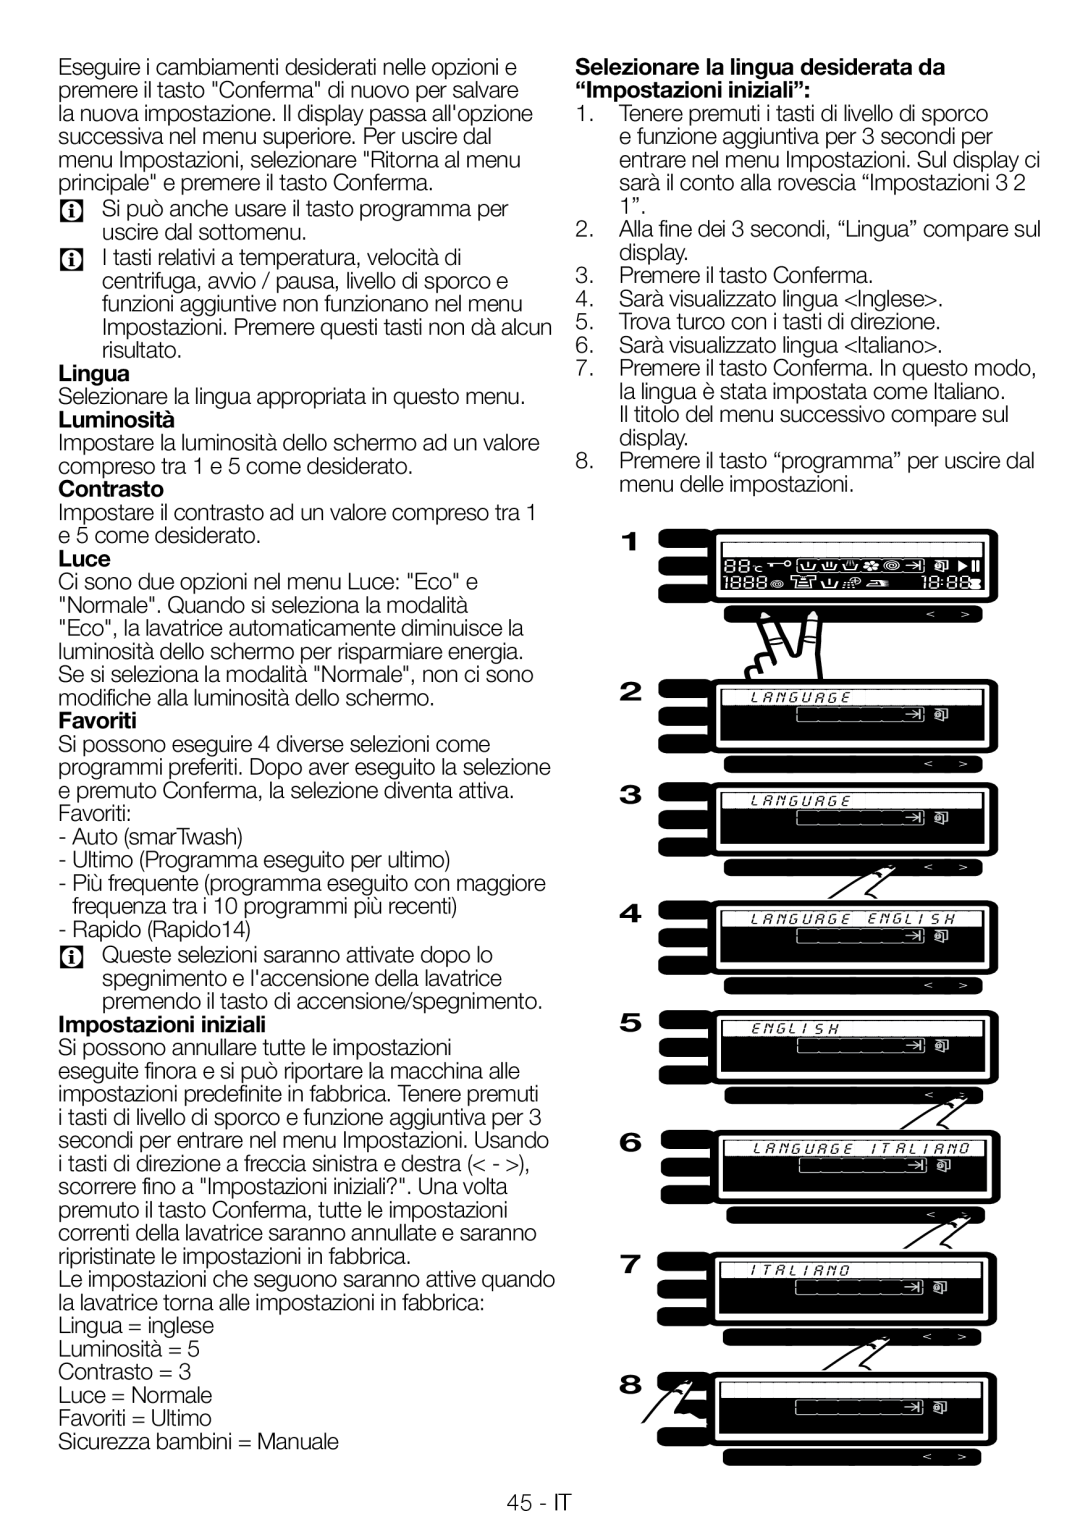 Blomberg WNF 8543 AE20 manual Lingua, Luminosità, Contrasto, Luce, Favoriti, Impostazioni iniziali 